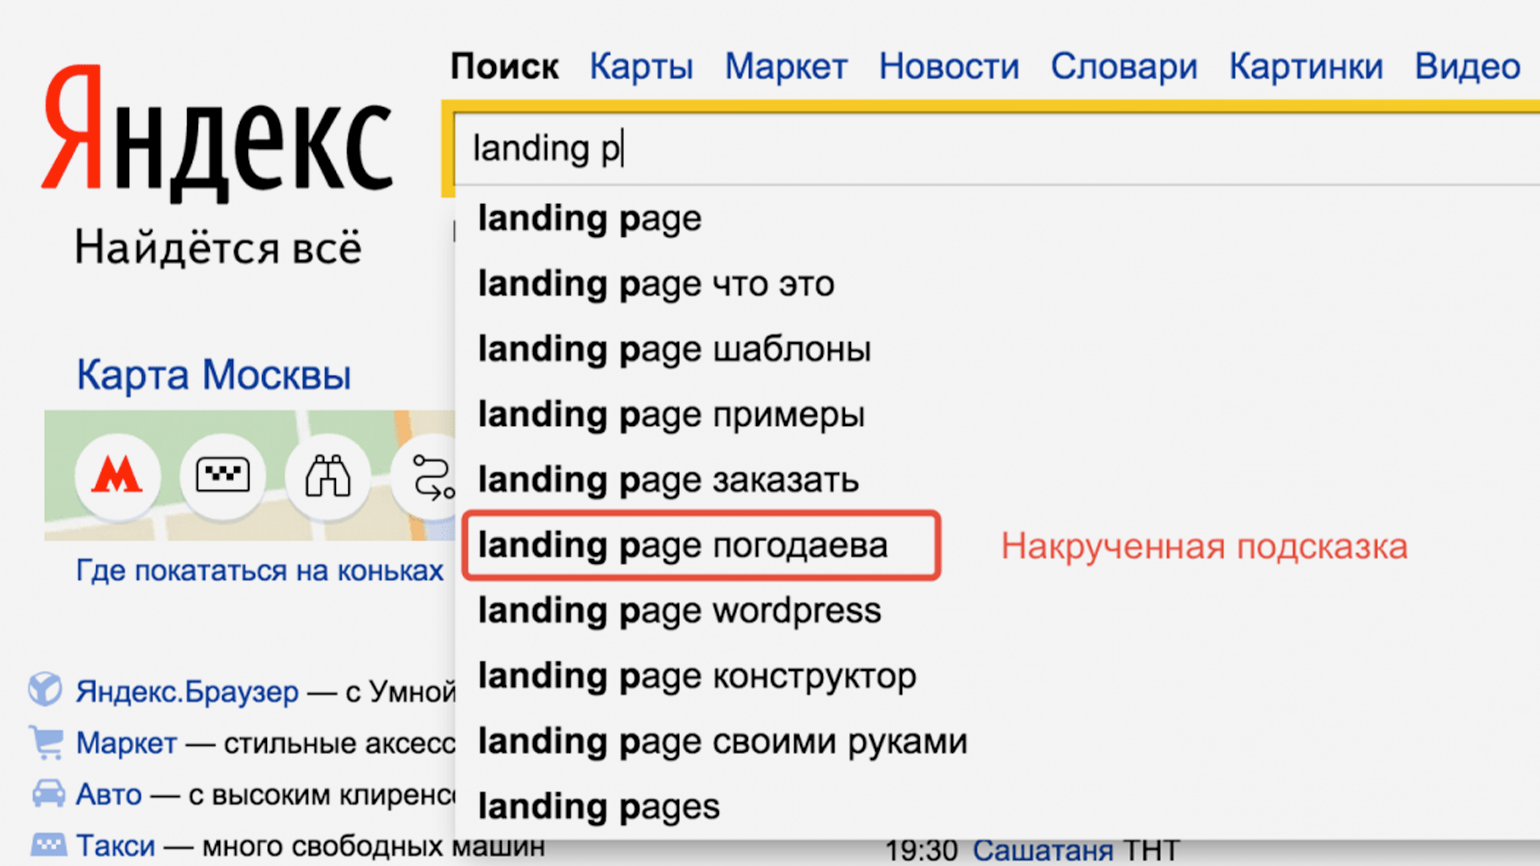 Поисковые подсказки в Яндексе. Поисковая строка Яндекса. Поисковые подсказки продвижение. Реклама в поисковых подсказках